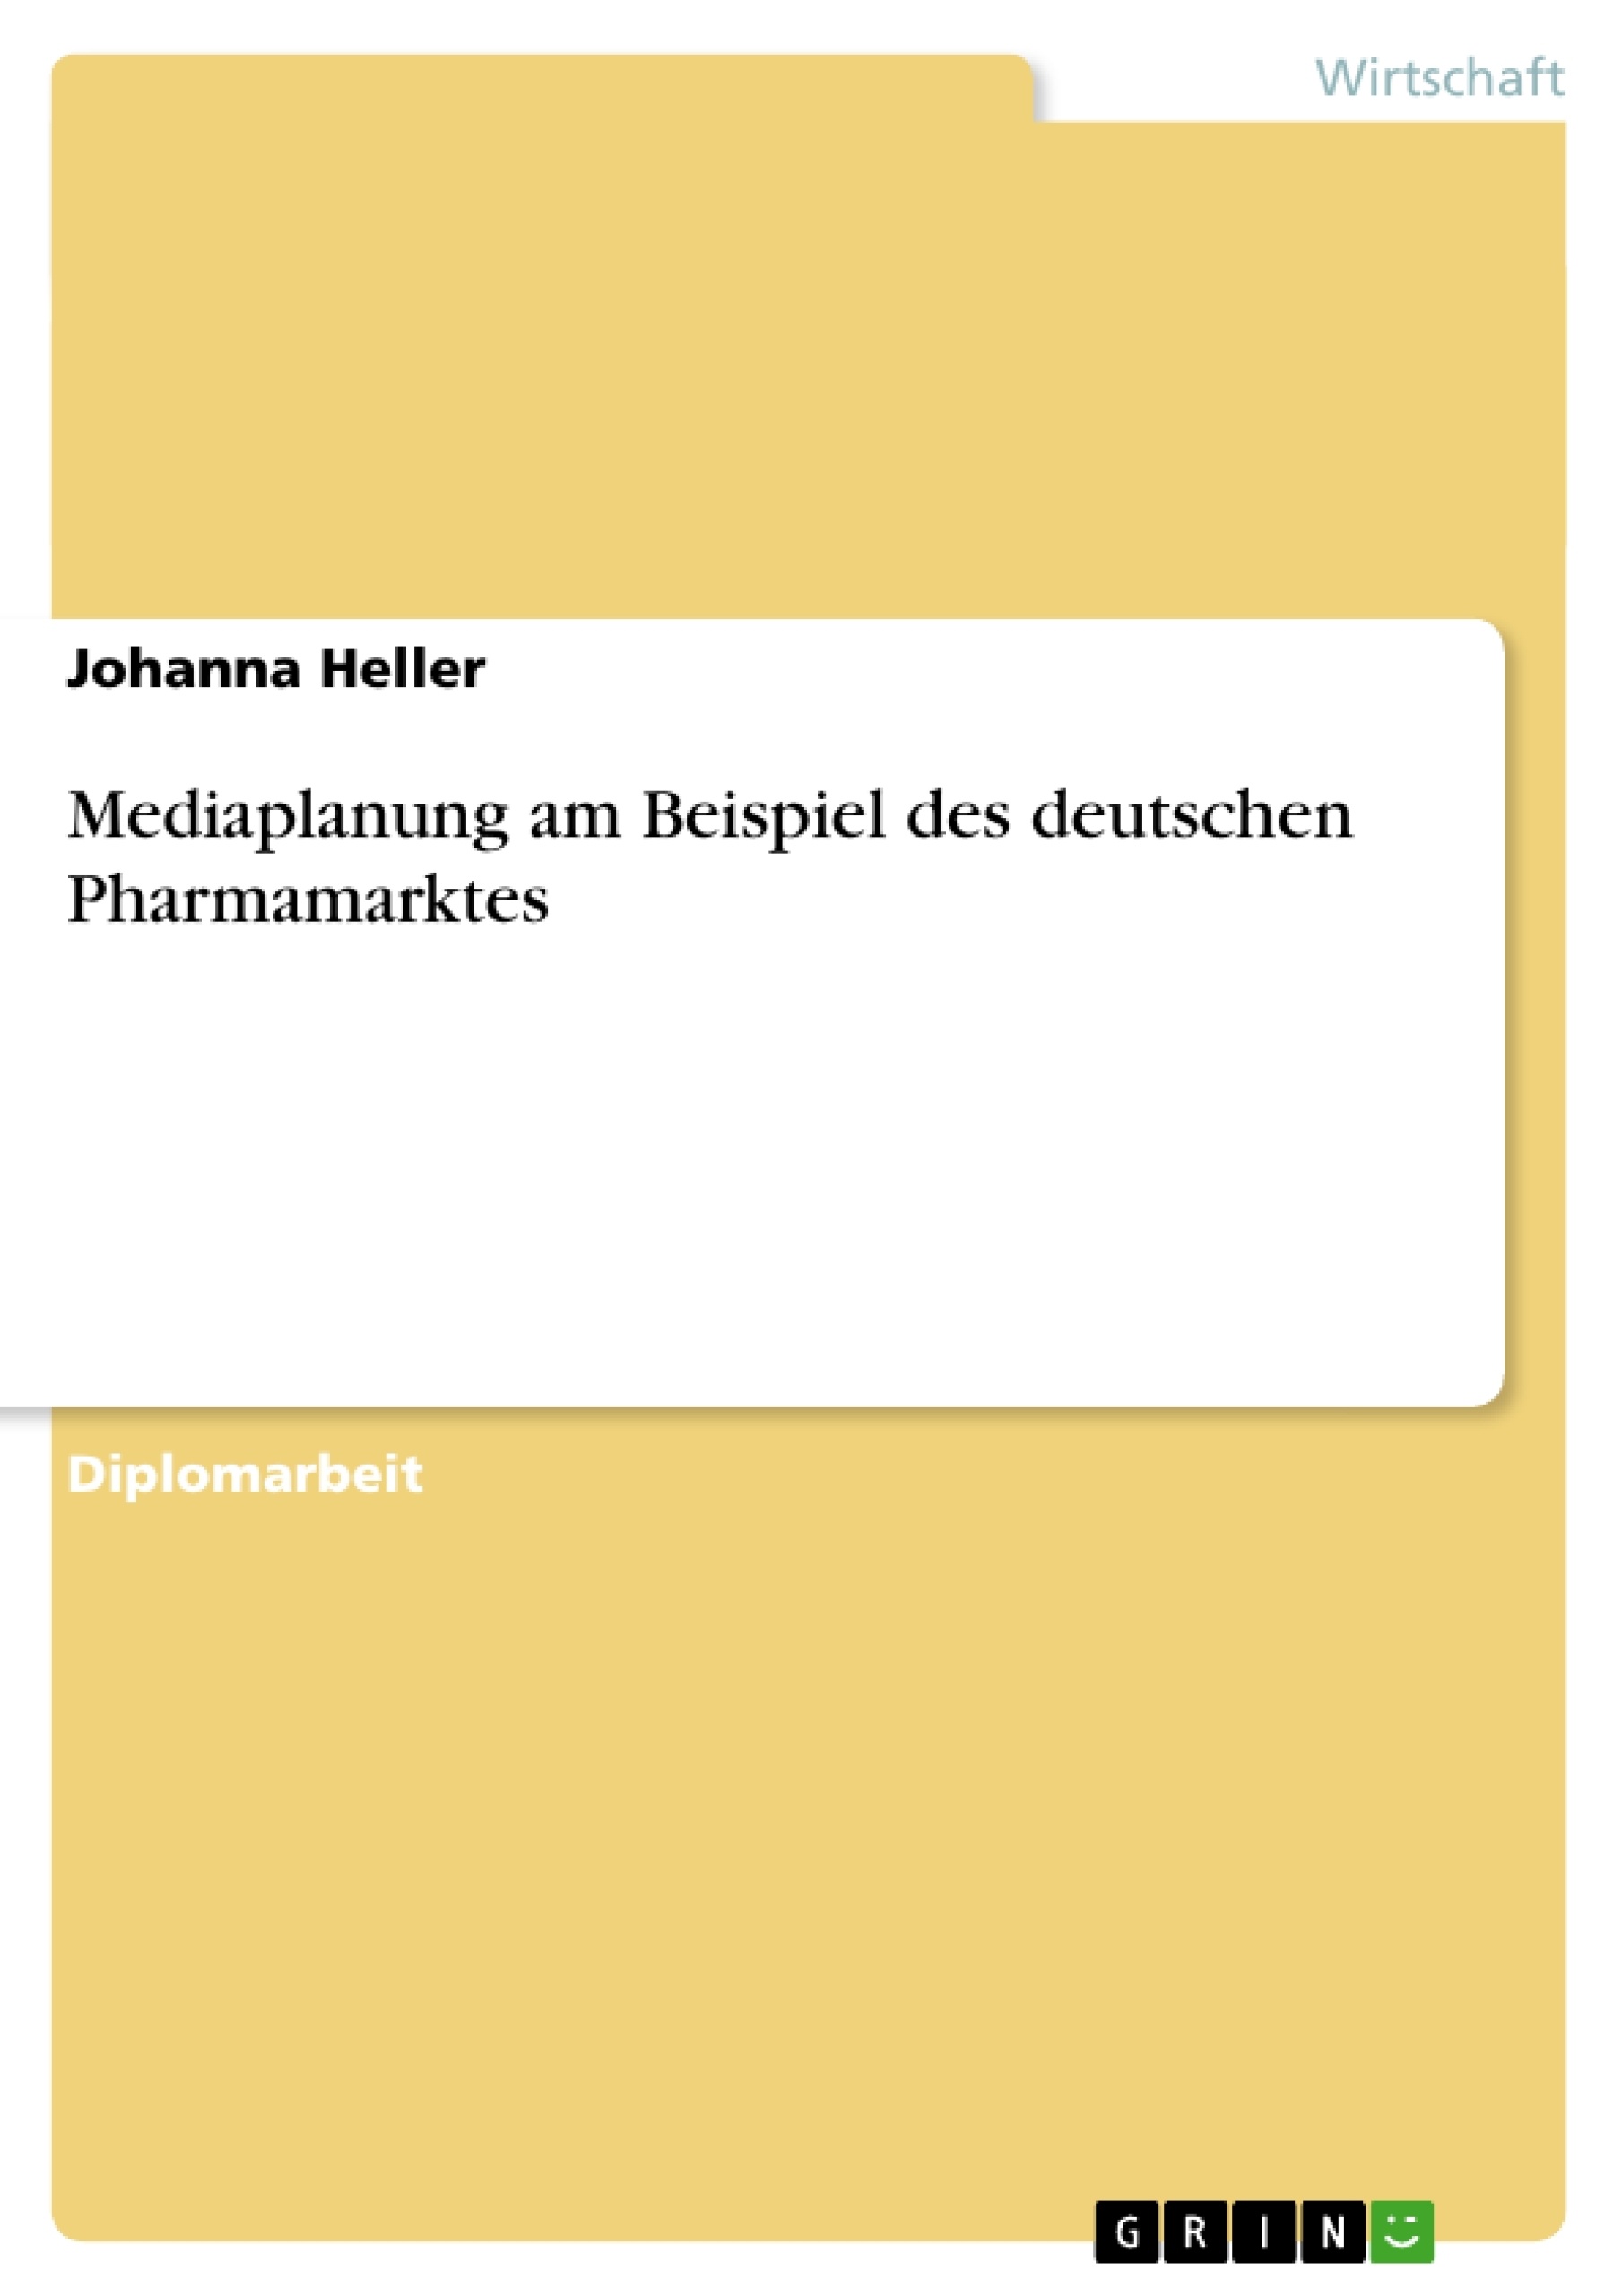 Título: Mediaplanung am Beispiel des deutschen Pharmamarktes